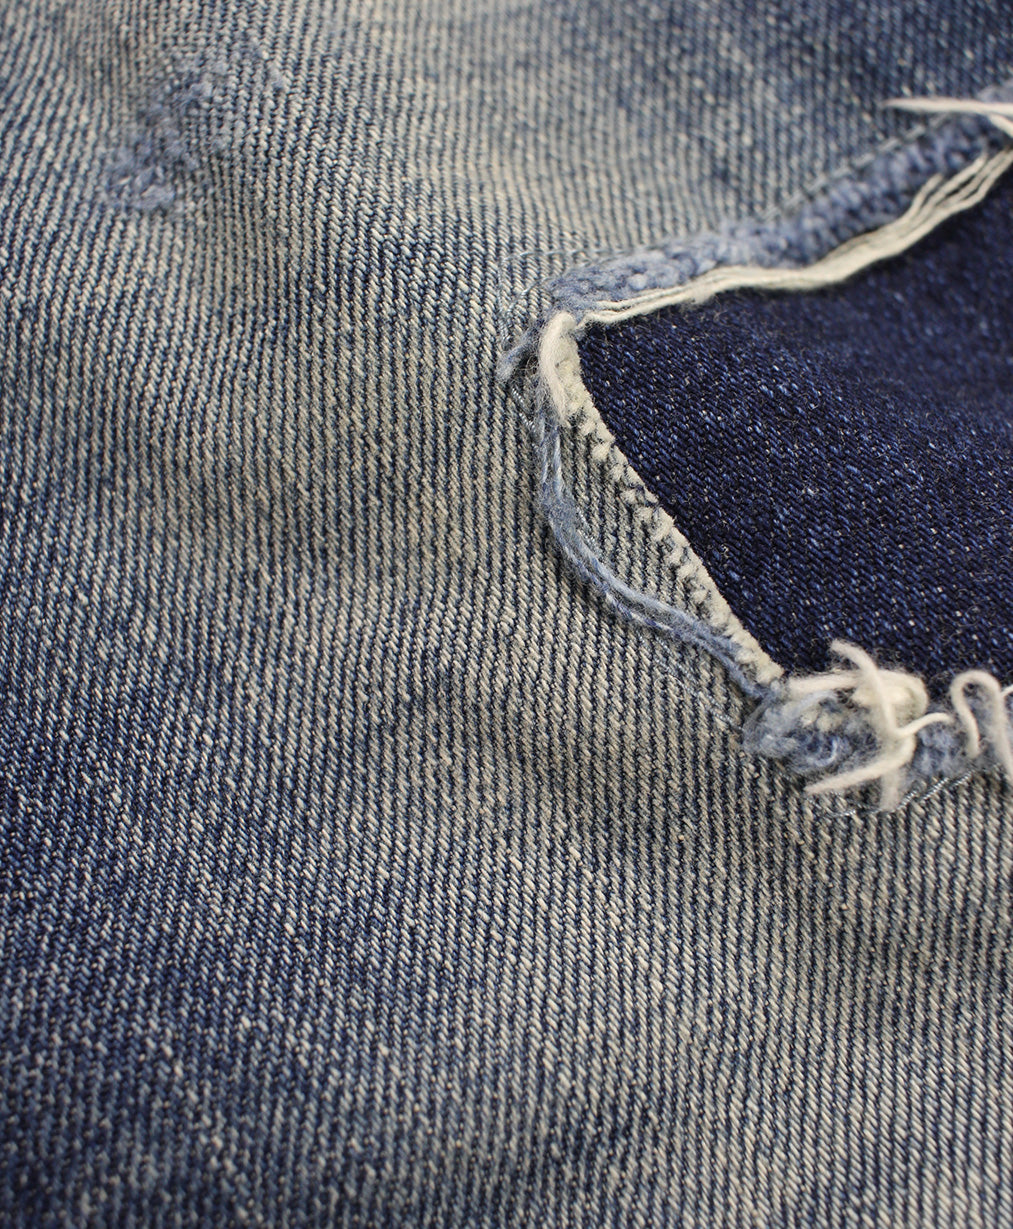 Blue Krait - Classic Vintage Distressed Denim Jeans